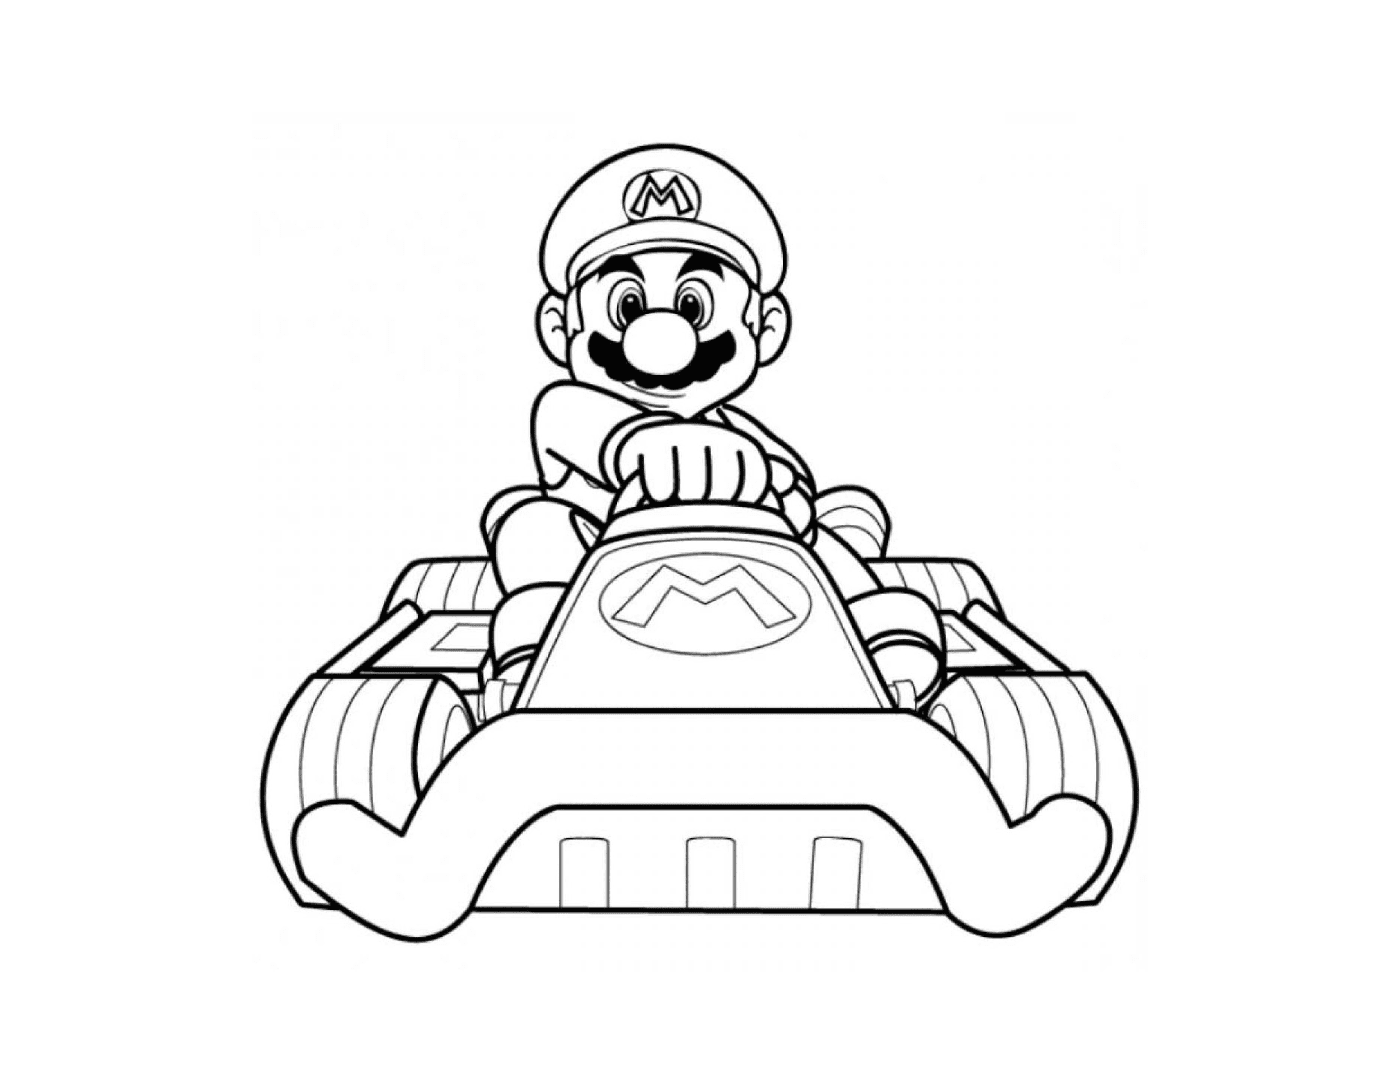  Mario Kart Wii mit seinem Farbauto 